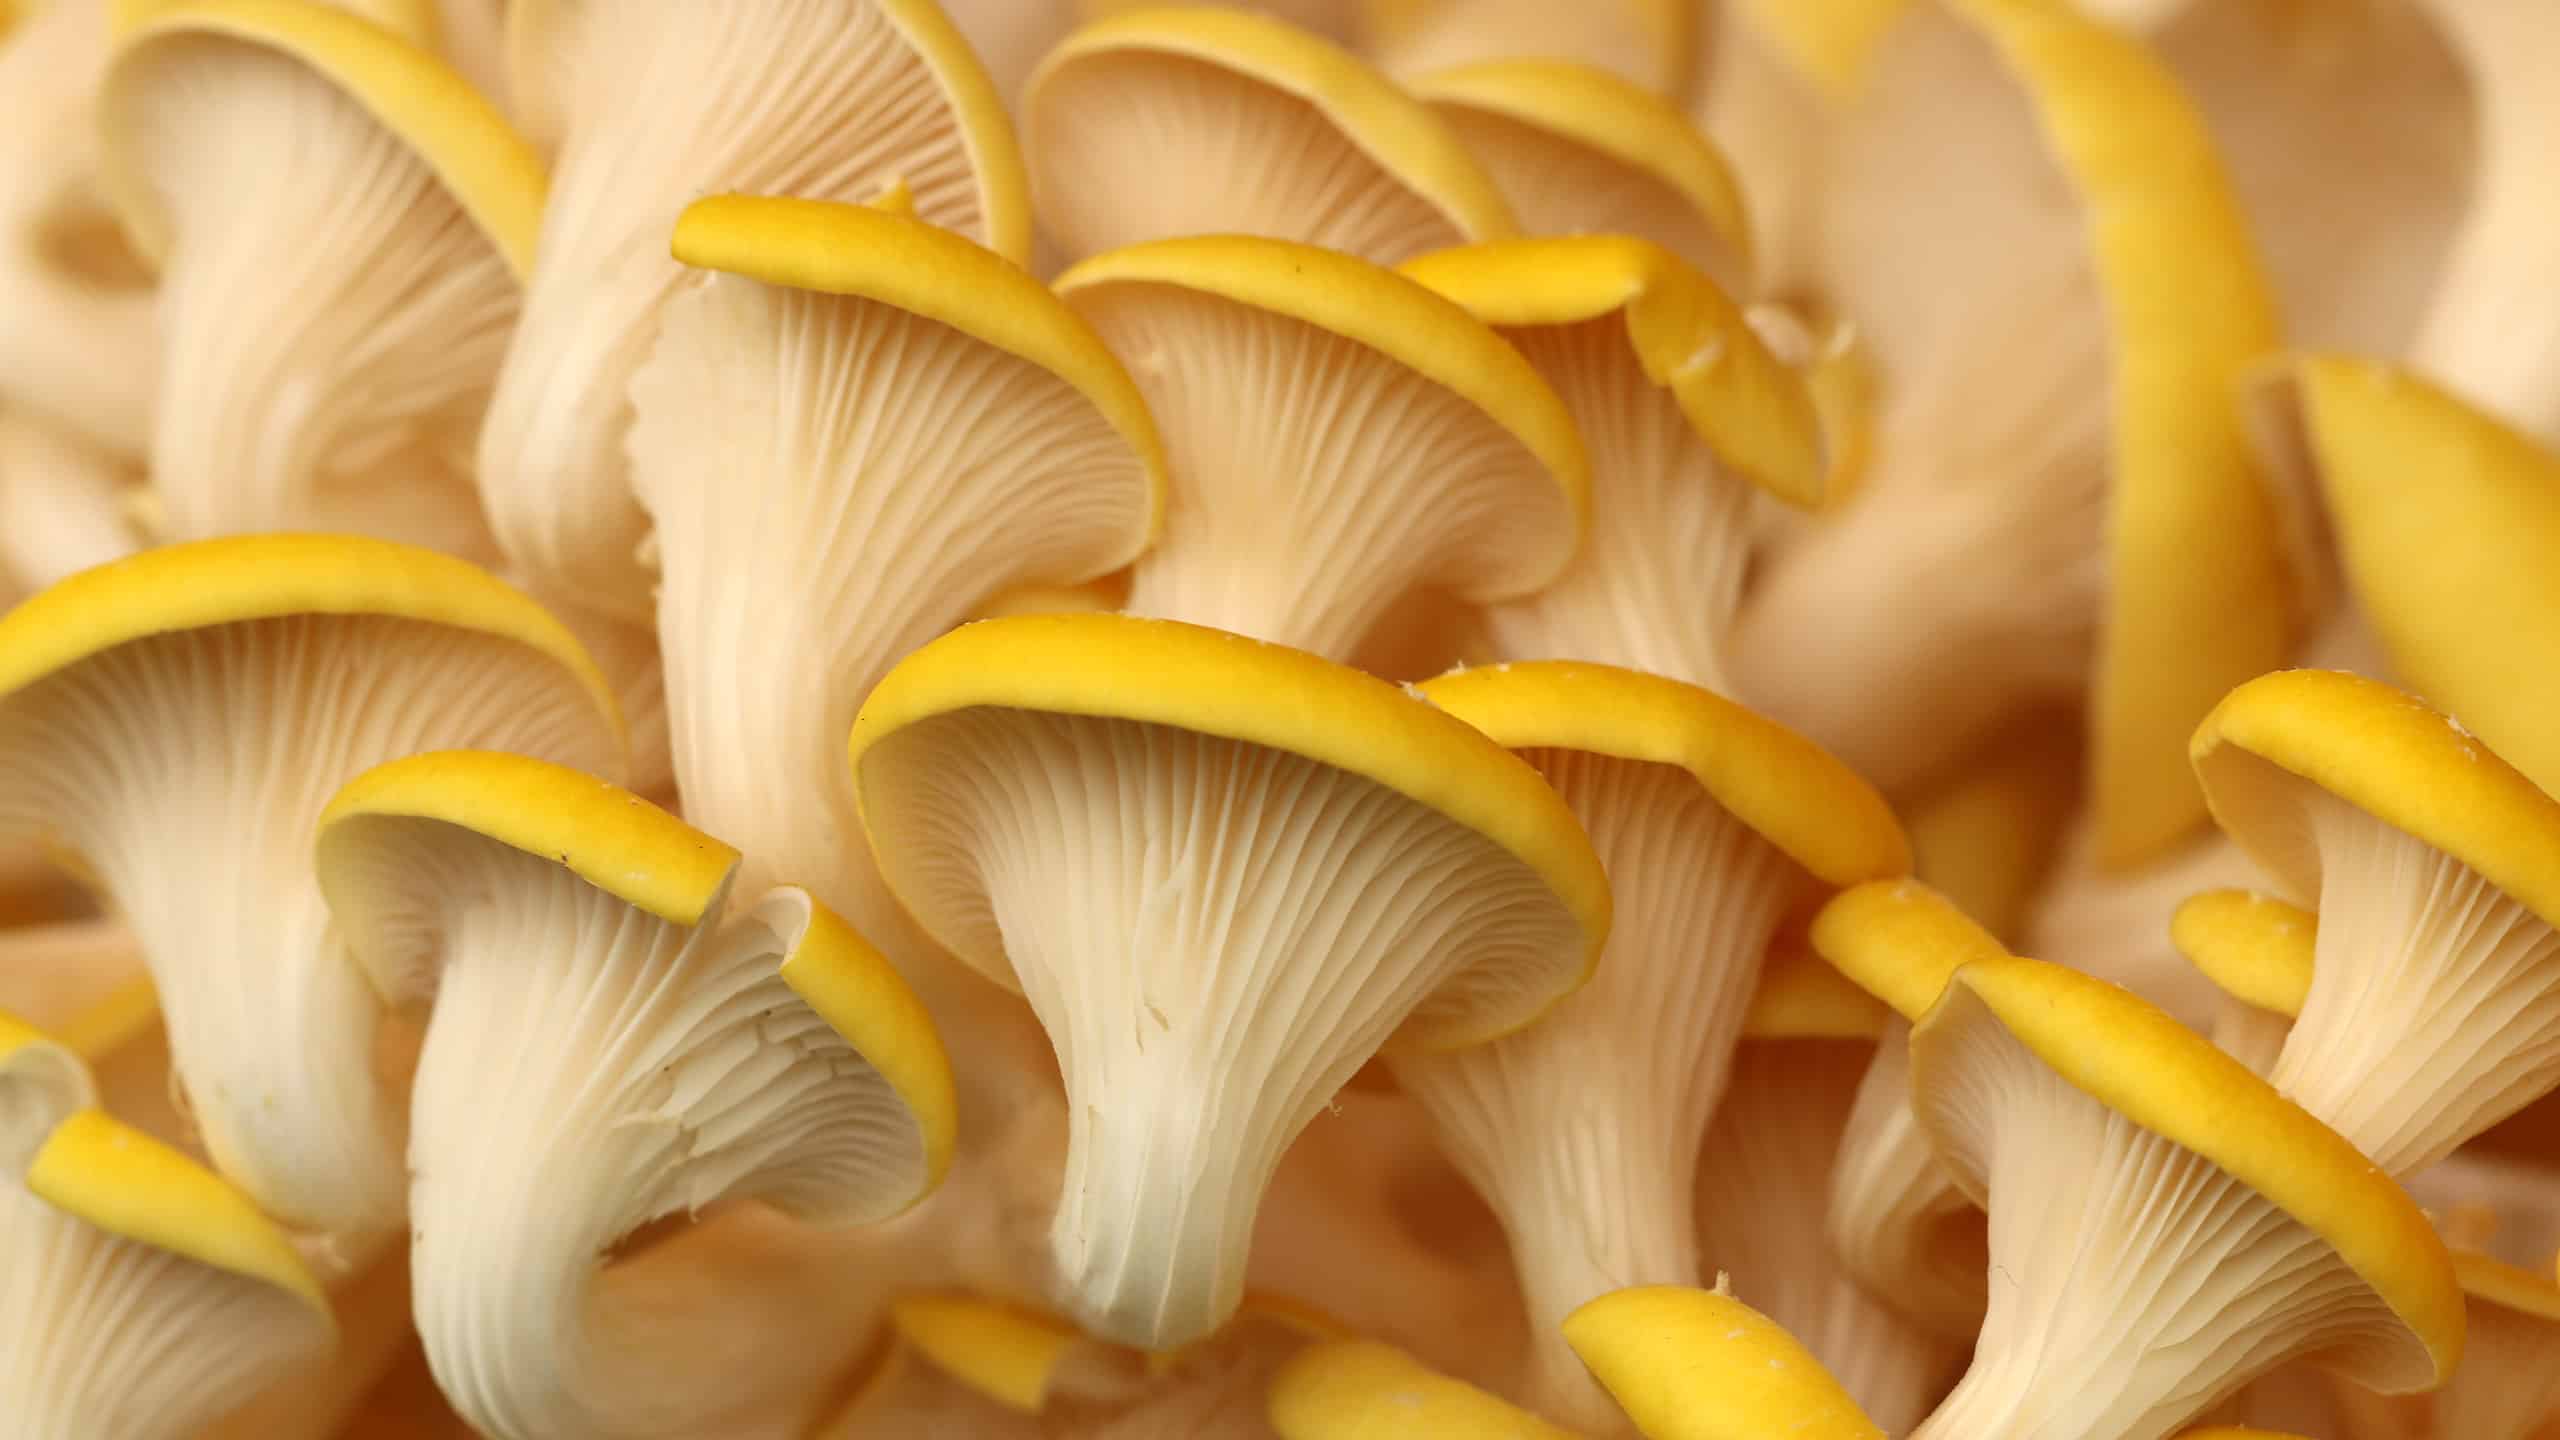 Golden oyster mushroom Pleurotus citrinopileatus